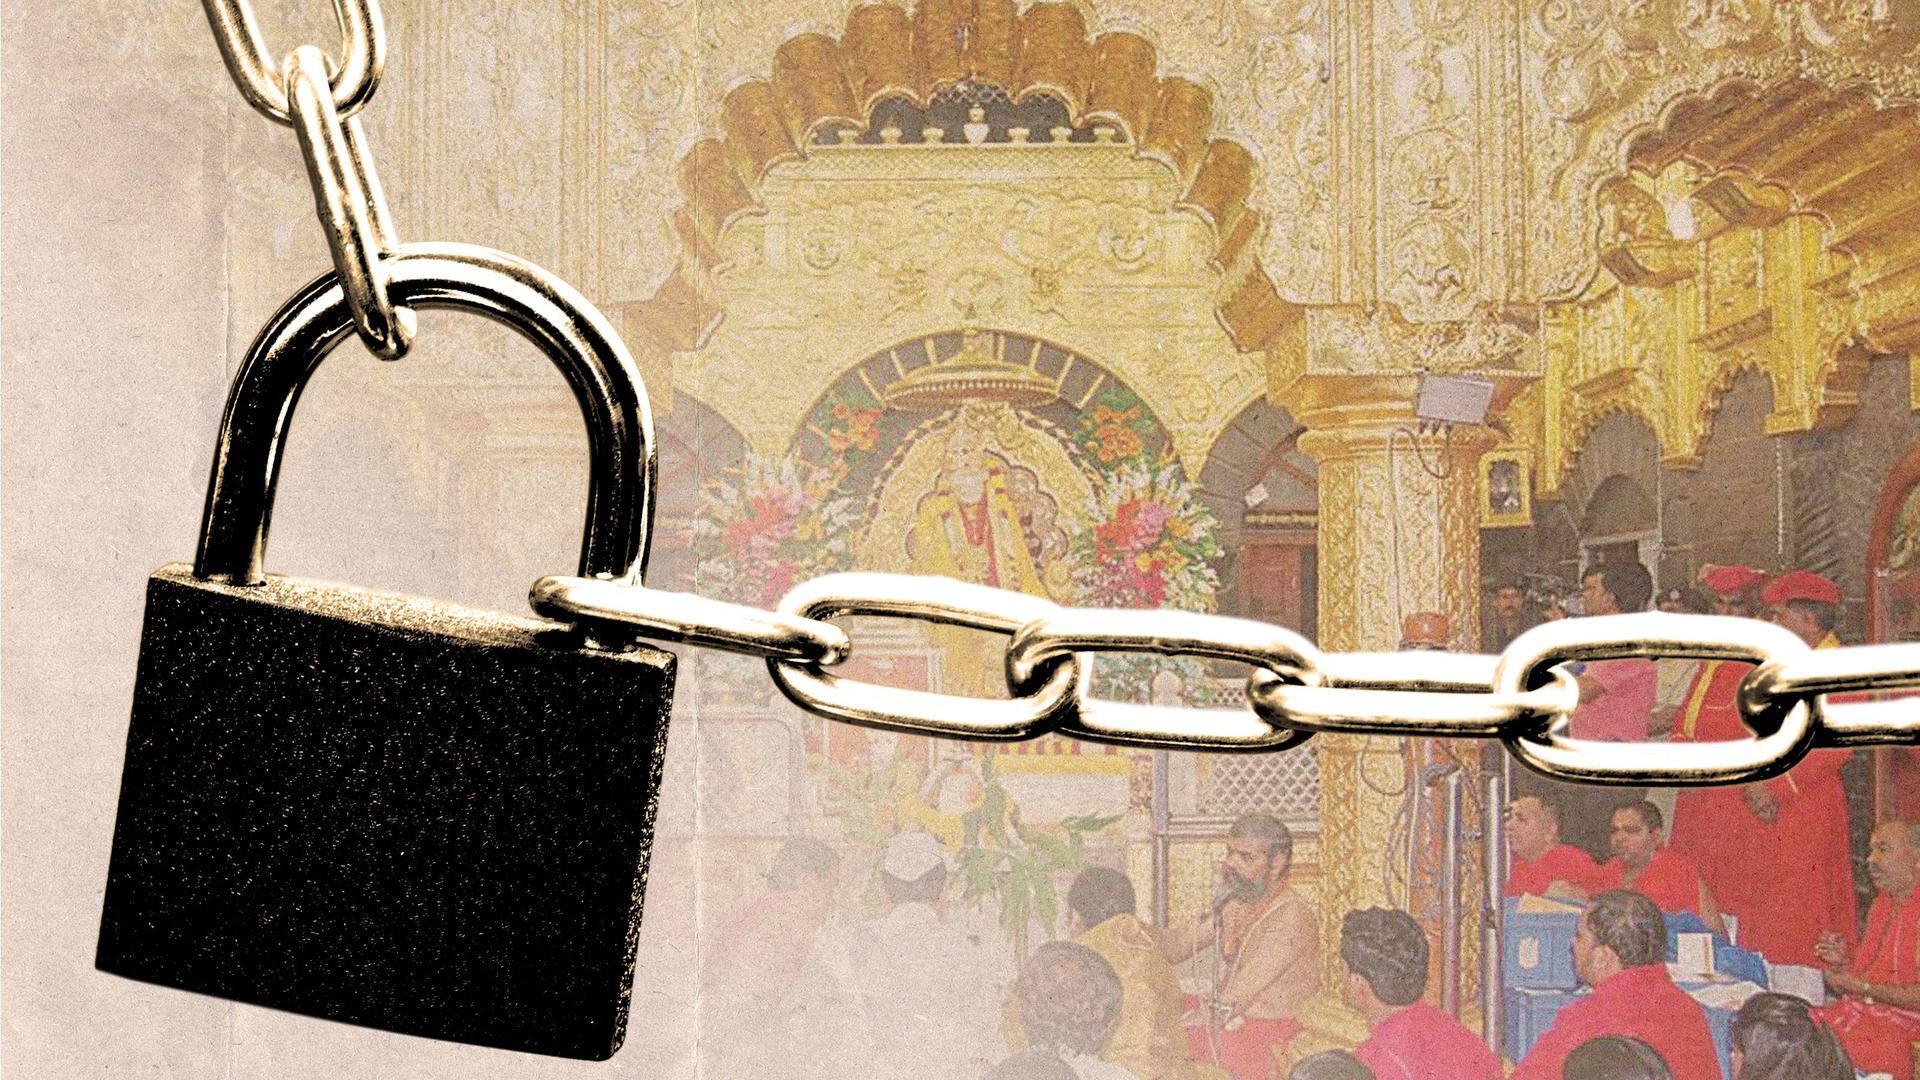 మే 1నుంచి షిర్డీ సాయిబాబా ఆలయం మూసివేత; ఎందుకో తెలుసా?